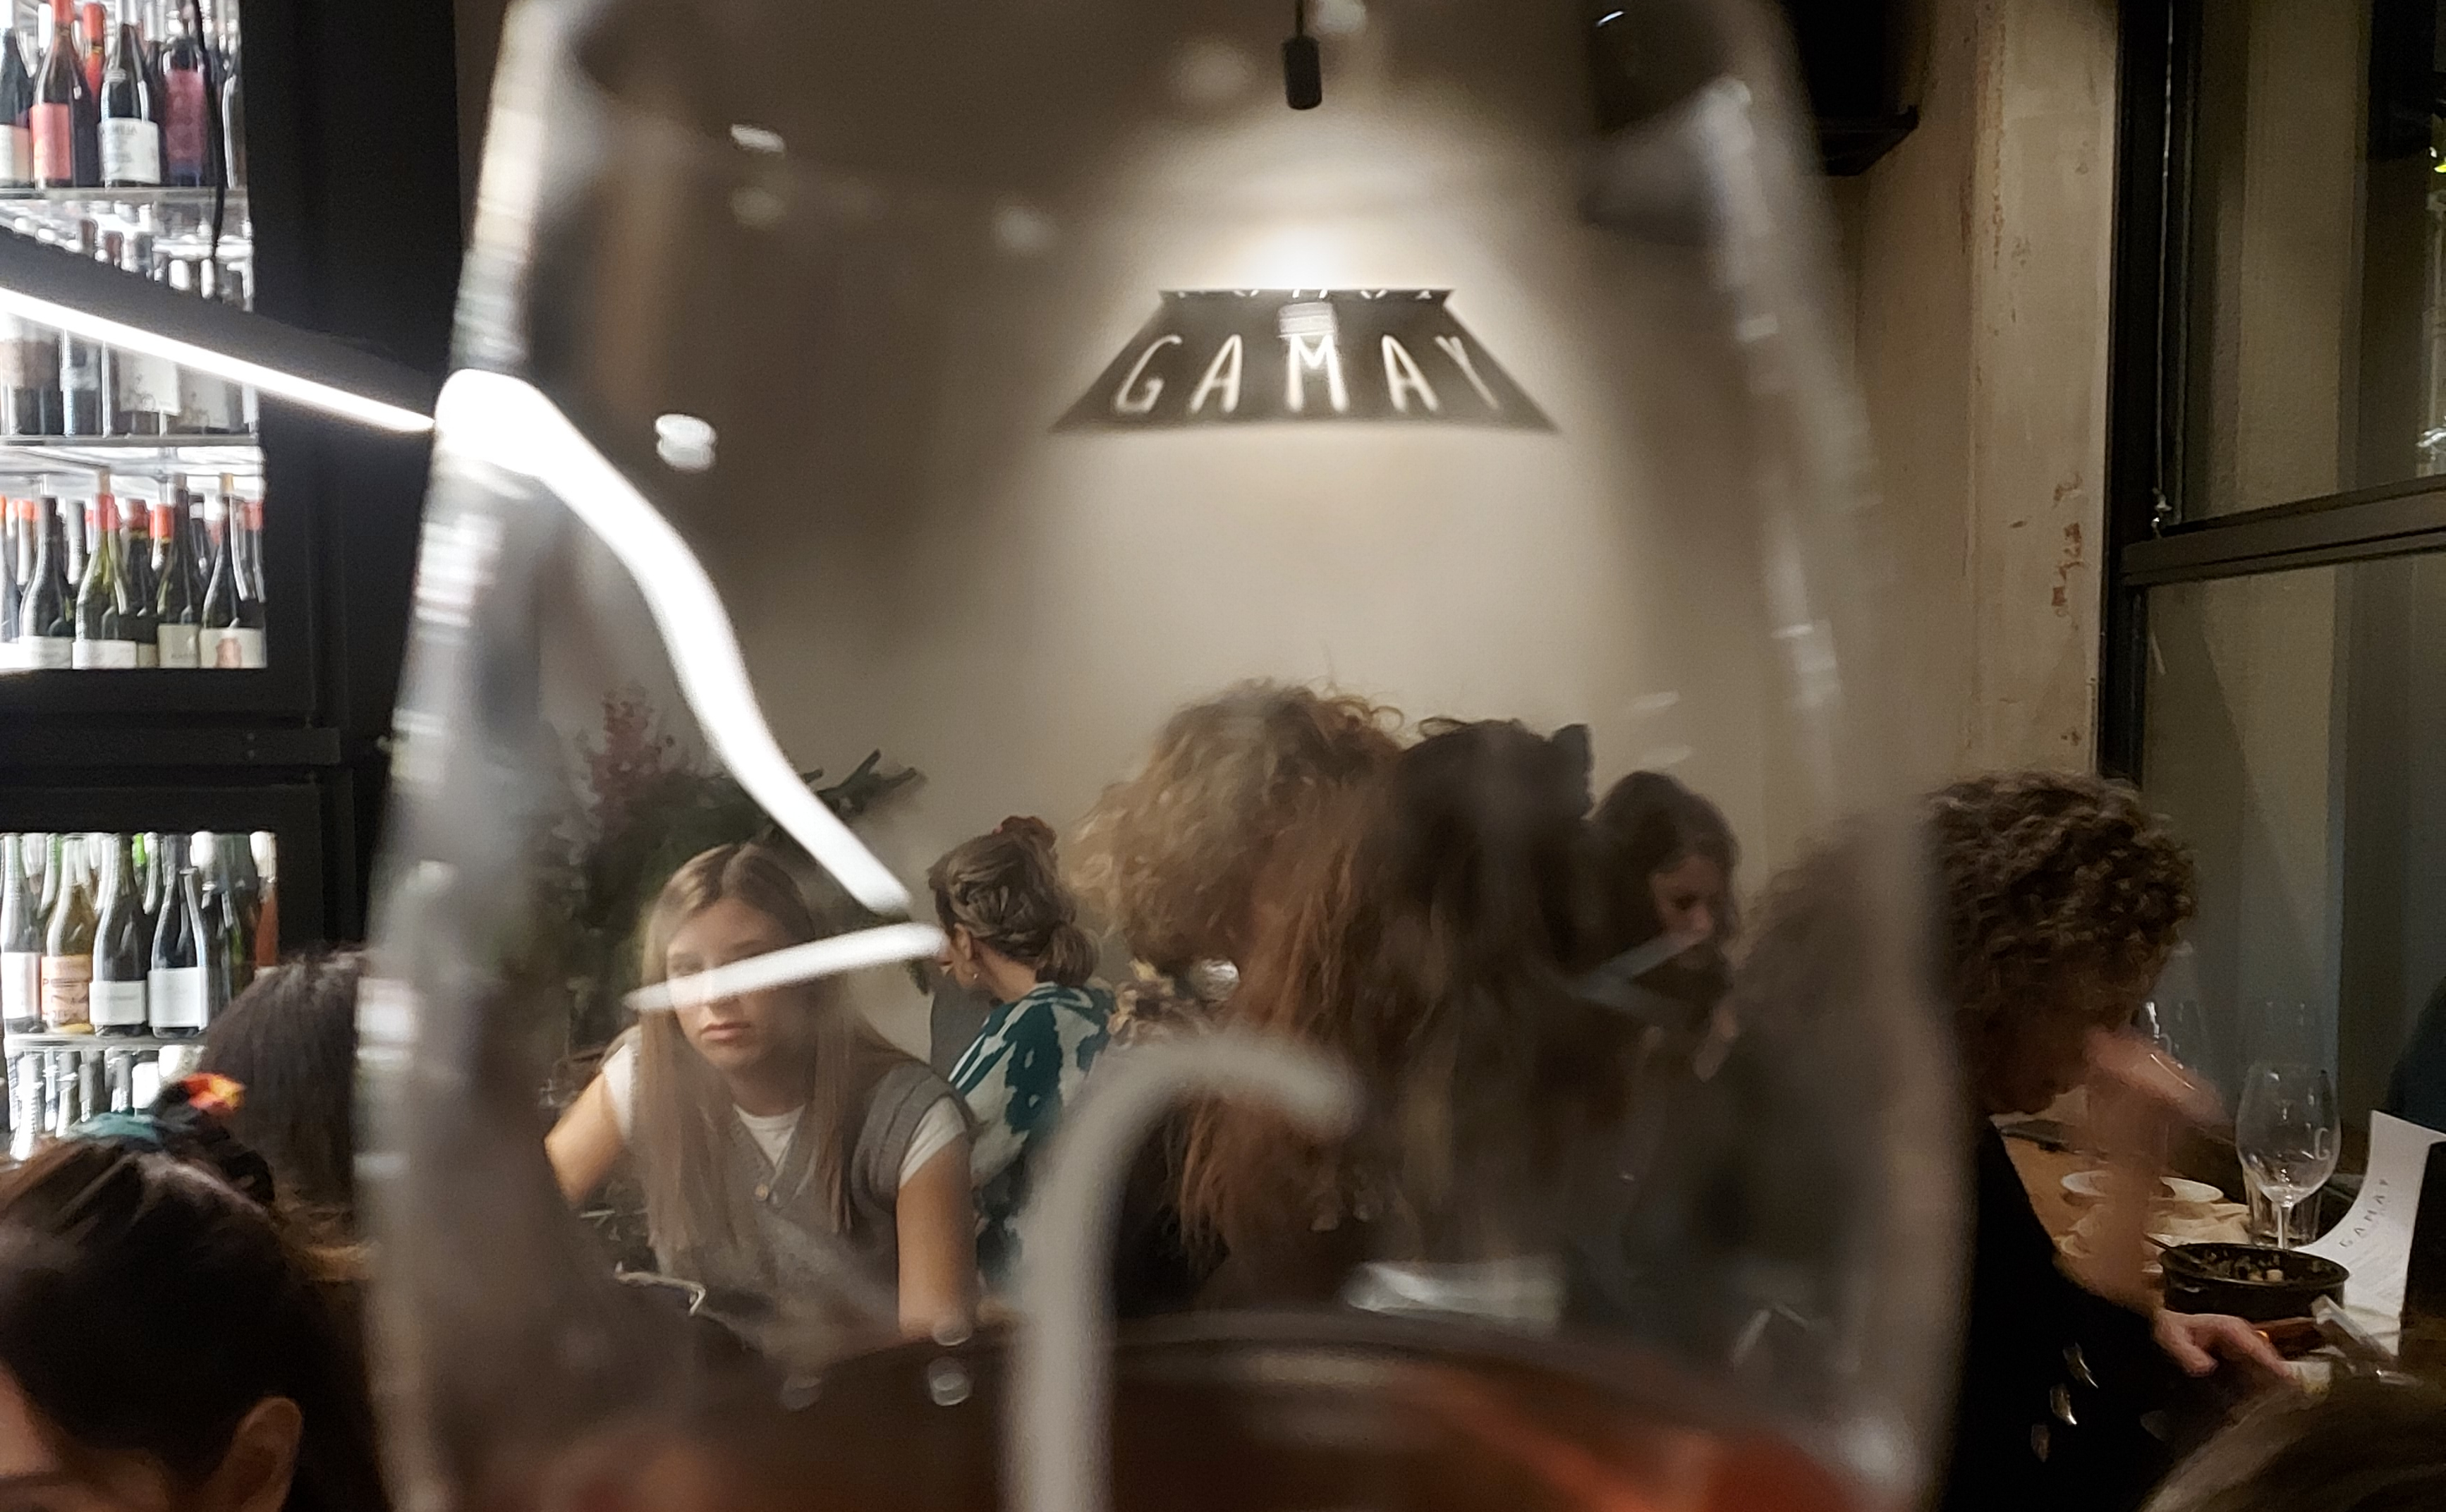 Το νέο υπέροχο wine bar της Αθήνας άνοιξε μόλις στα Εξάρχεια και…Gamay